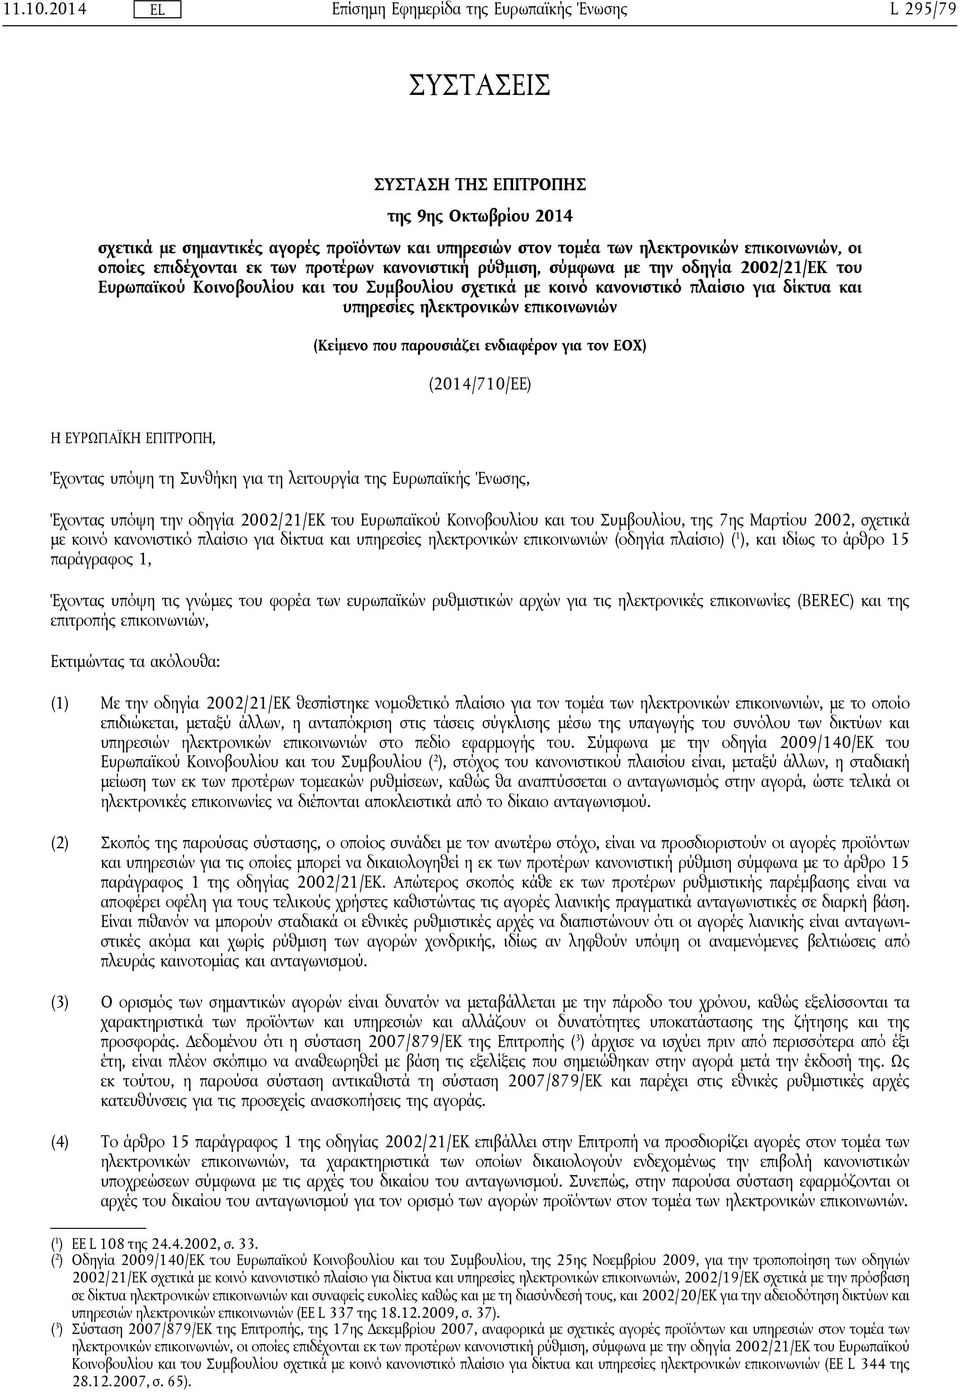 προτέρων κανονιστική ρύθμιση, σύμφωνα με την οδηγία 2002/21/ΕΚ του Ευρωπαϊκού Κοινοβουλίου και του Συμβουλίου σχετικά με κοινό κανονιστικό πλαίσιο για δίκτυα και υπηρεσίες ηλεκτρονικών επικοινωνιών